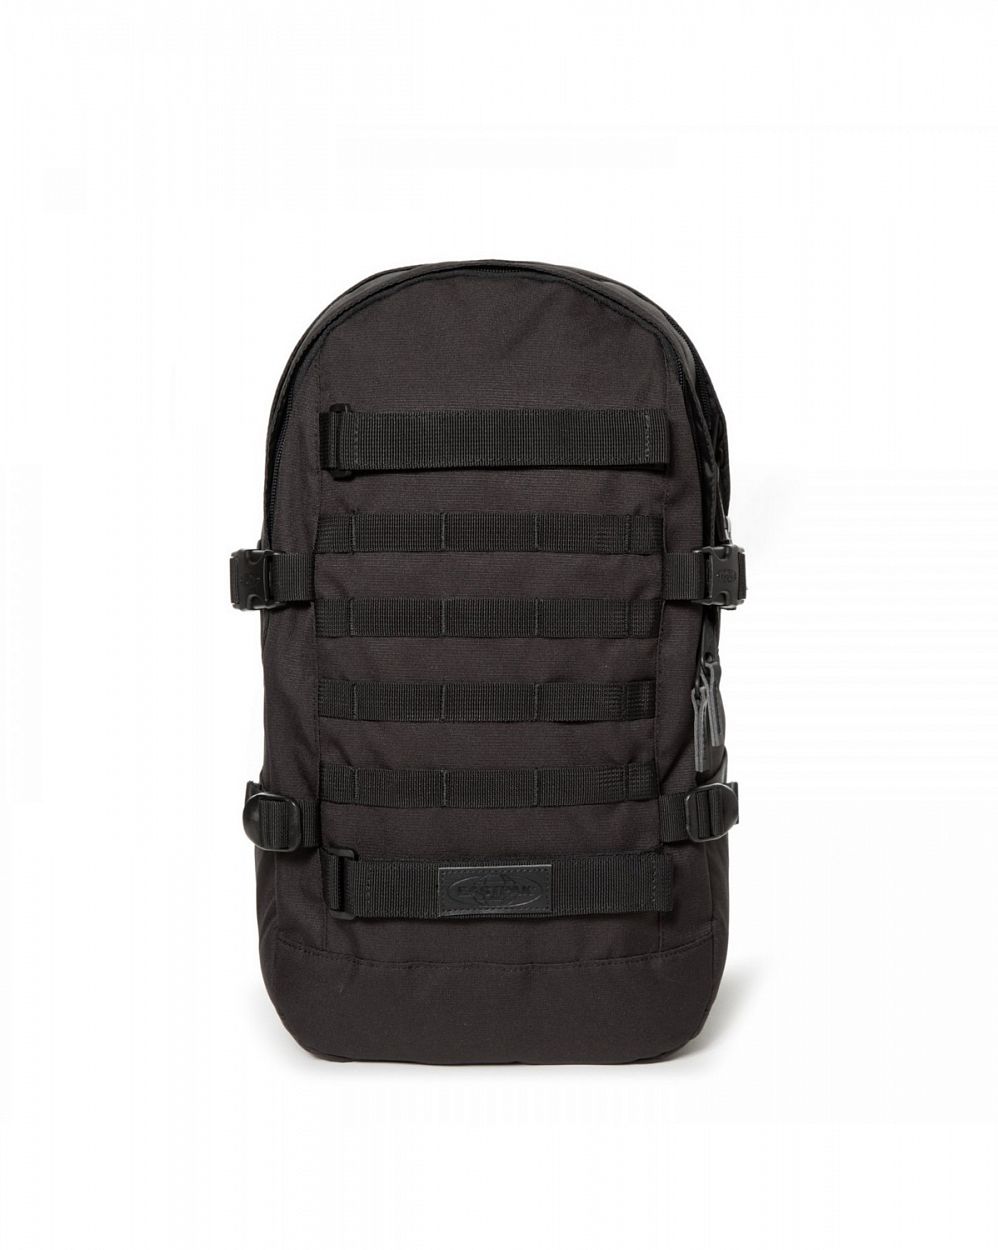 Рюкзак износостойкий для 15 ноутбука Eastpak Floid Tact Black отзывы